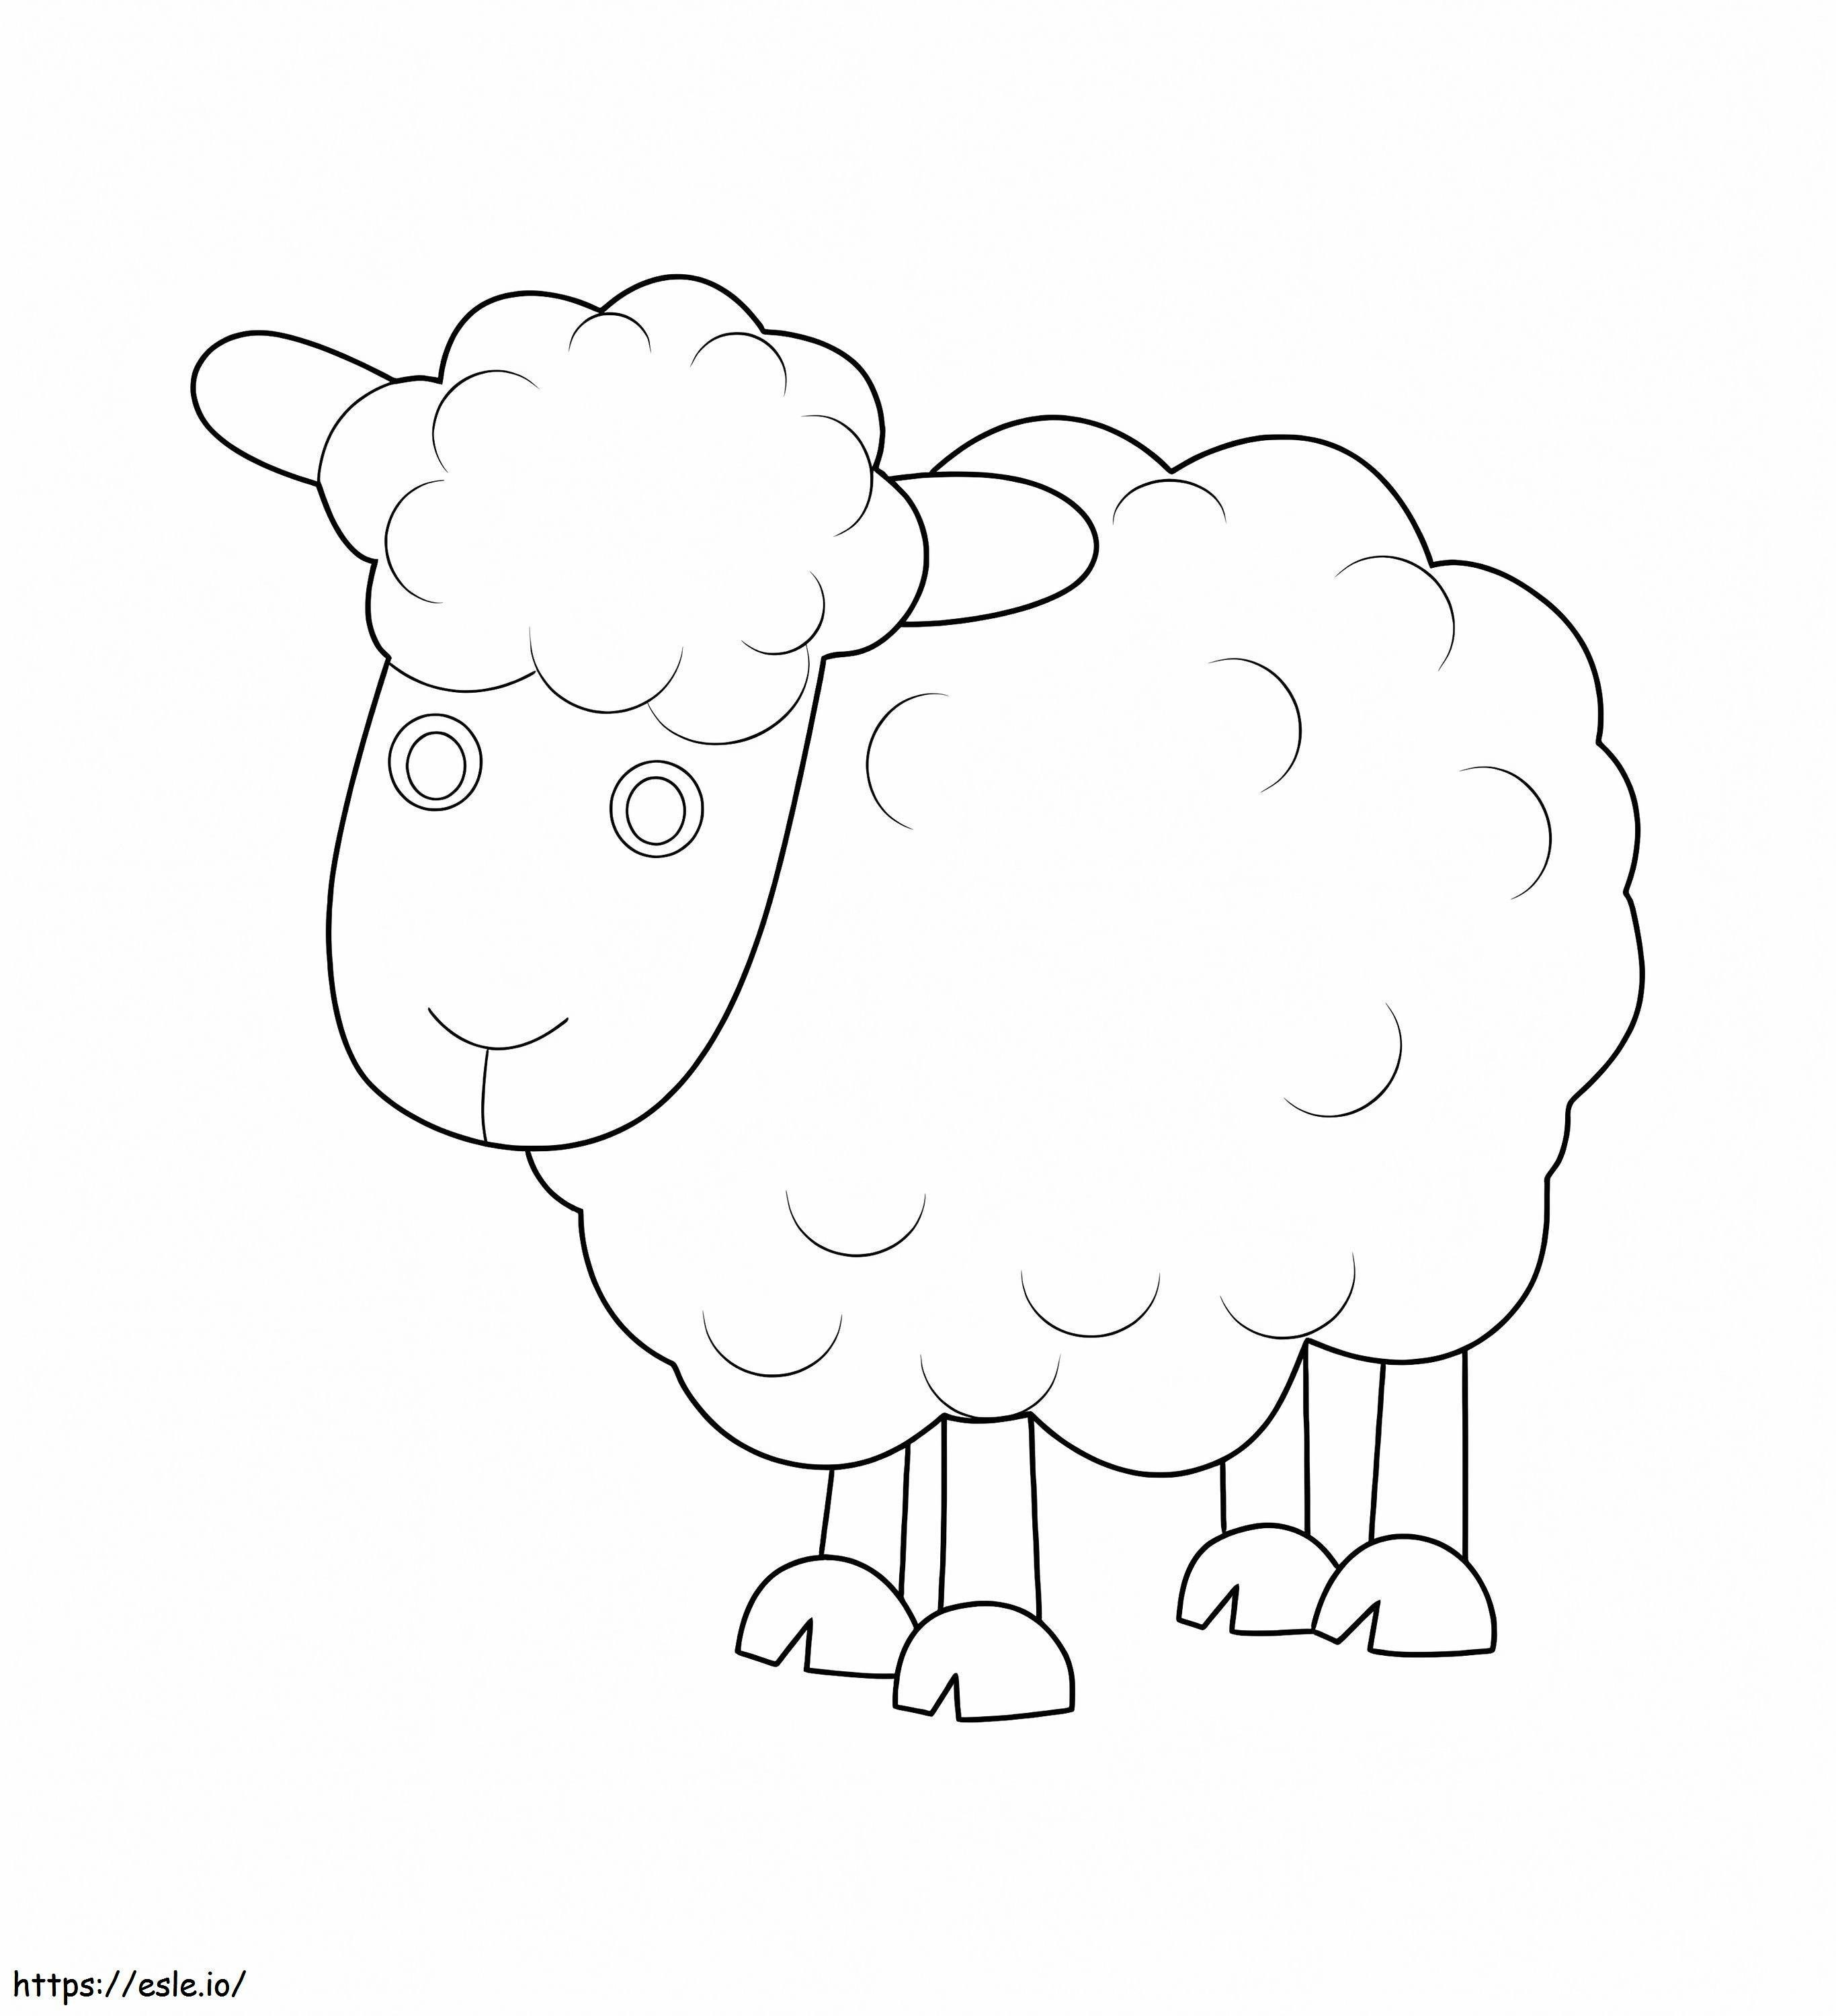 Perfecte schapen kleurplaat kleurplaat